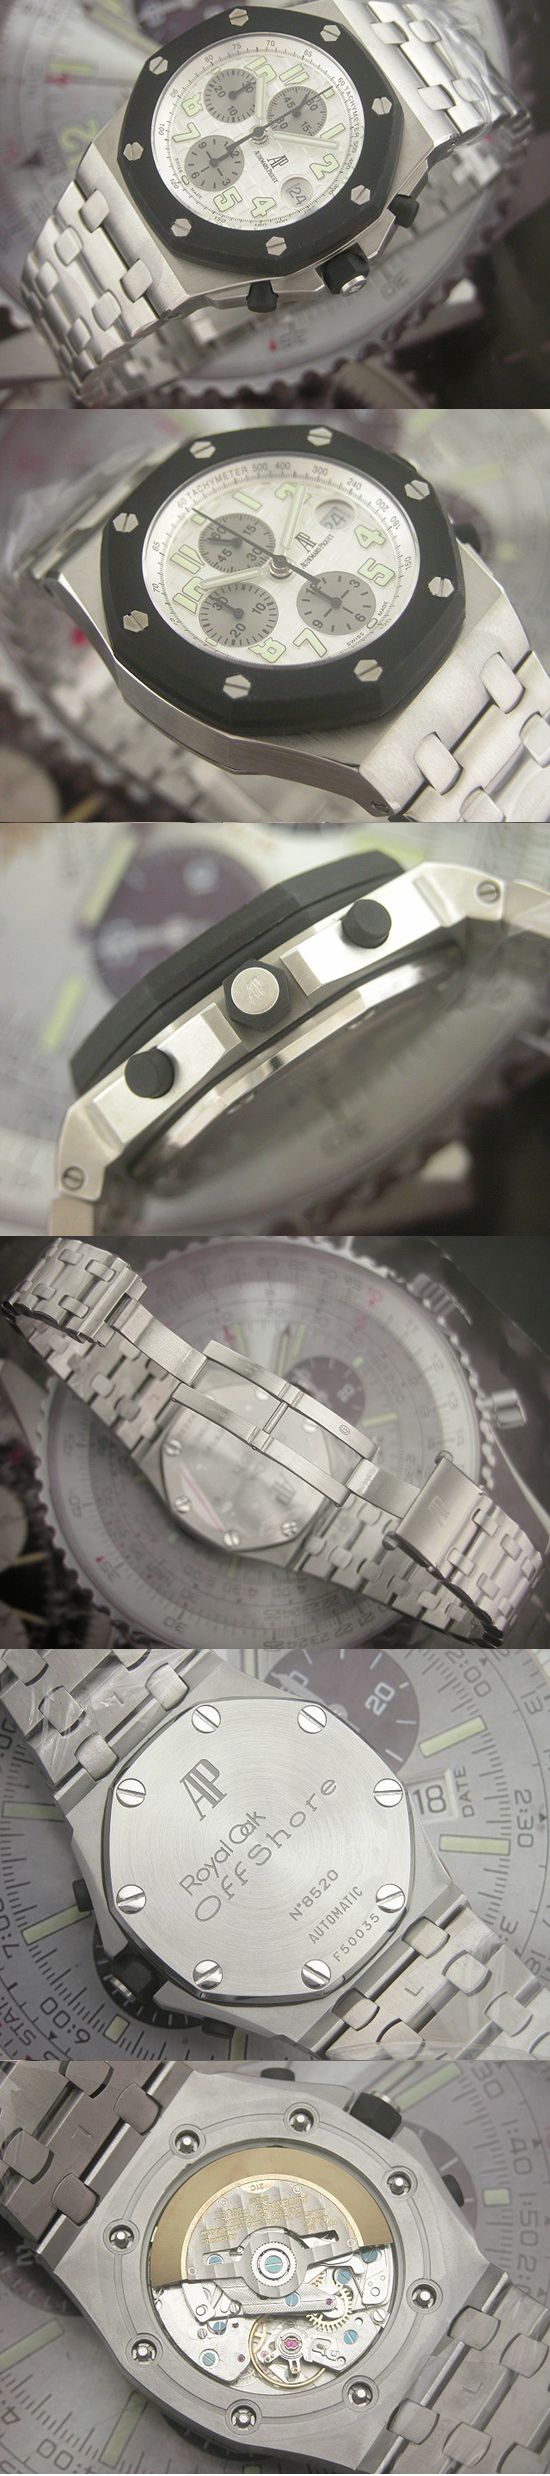 おしゃれなブランド時計がオーデマピゲ-ロイヤルオークオフショア-AUDEMARS PIGUET-25940SK.OO.D002CA.02-aj-男性用を提供します.